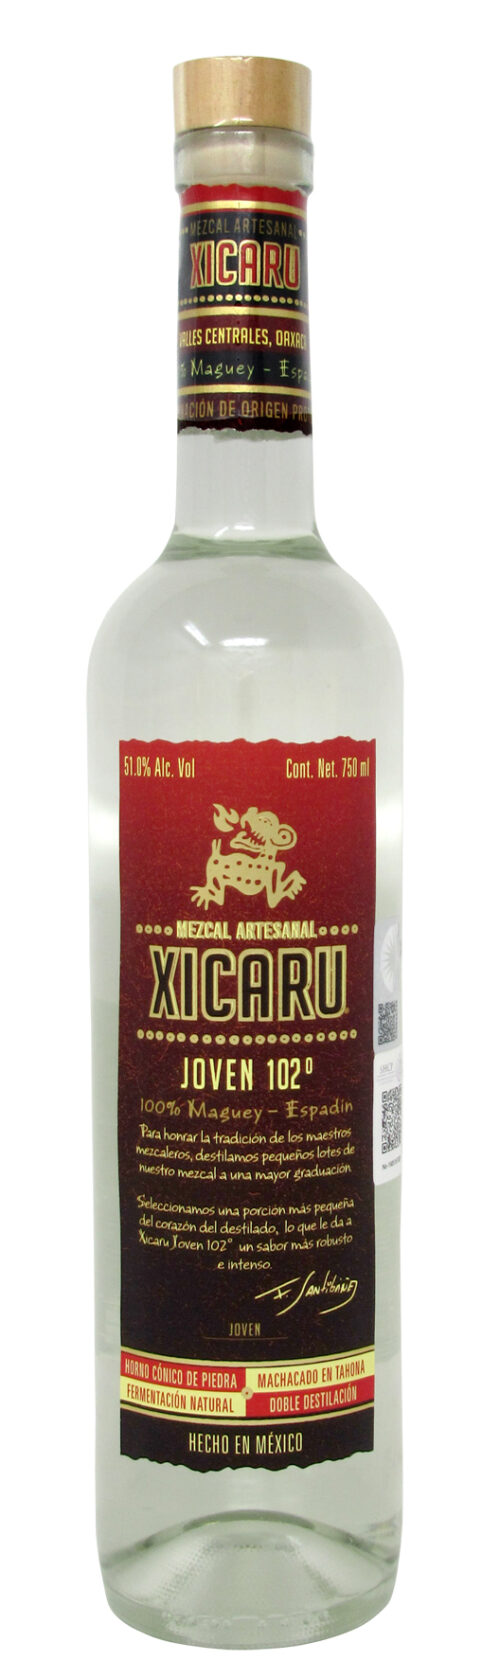 Mezcal Xicaru 102º